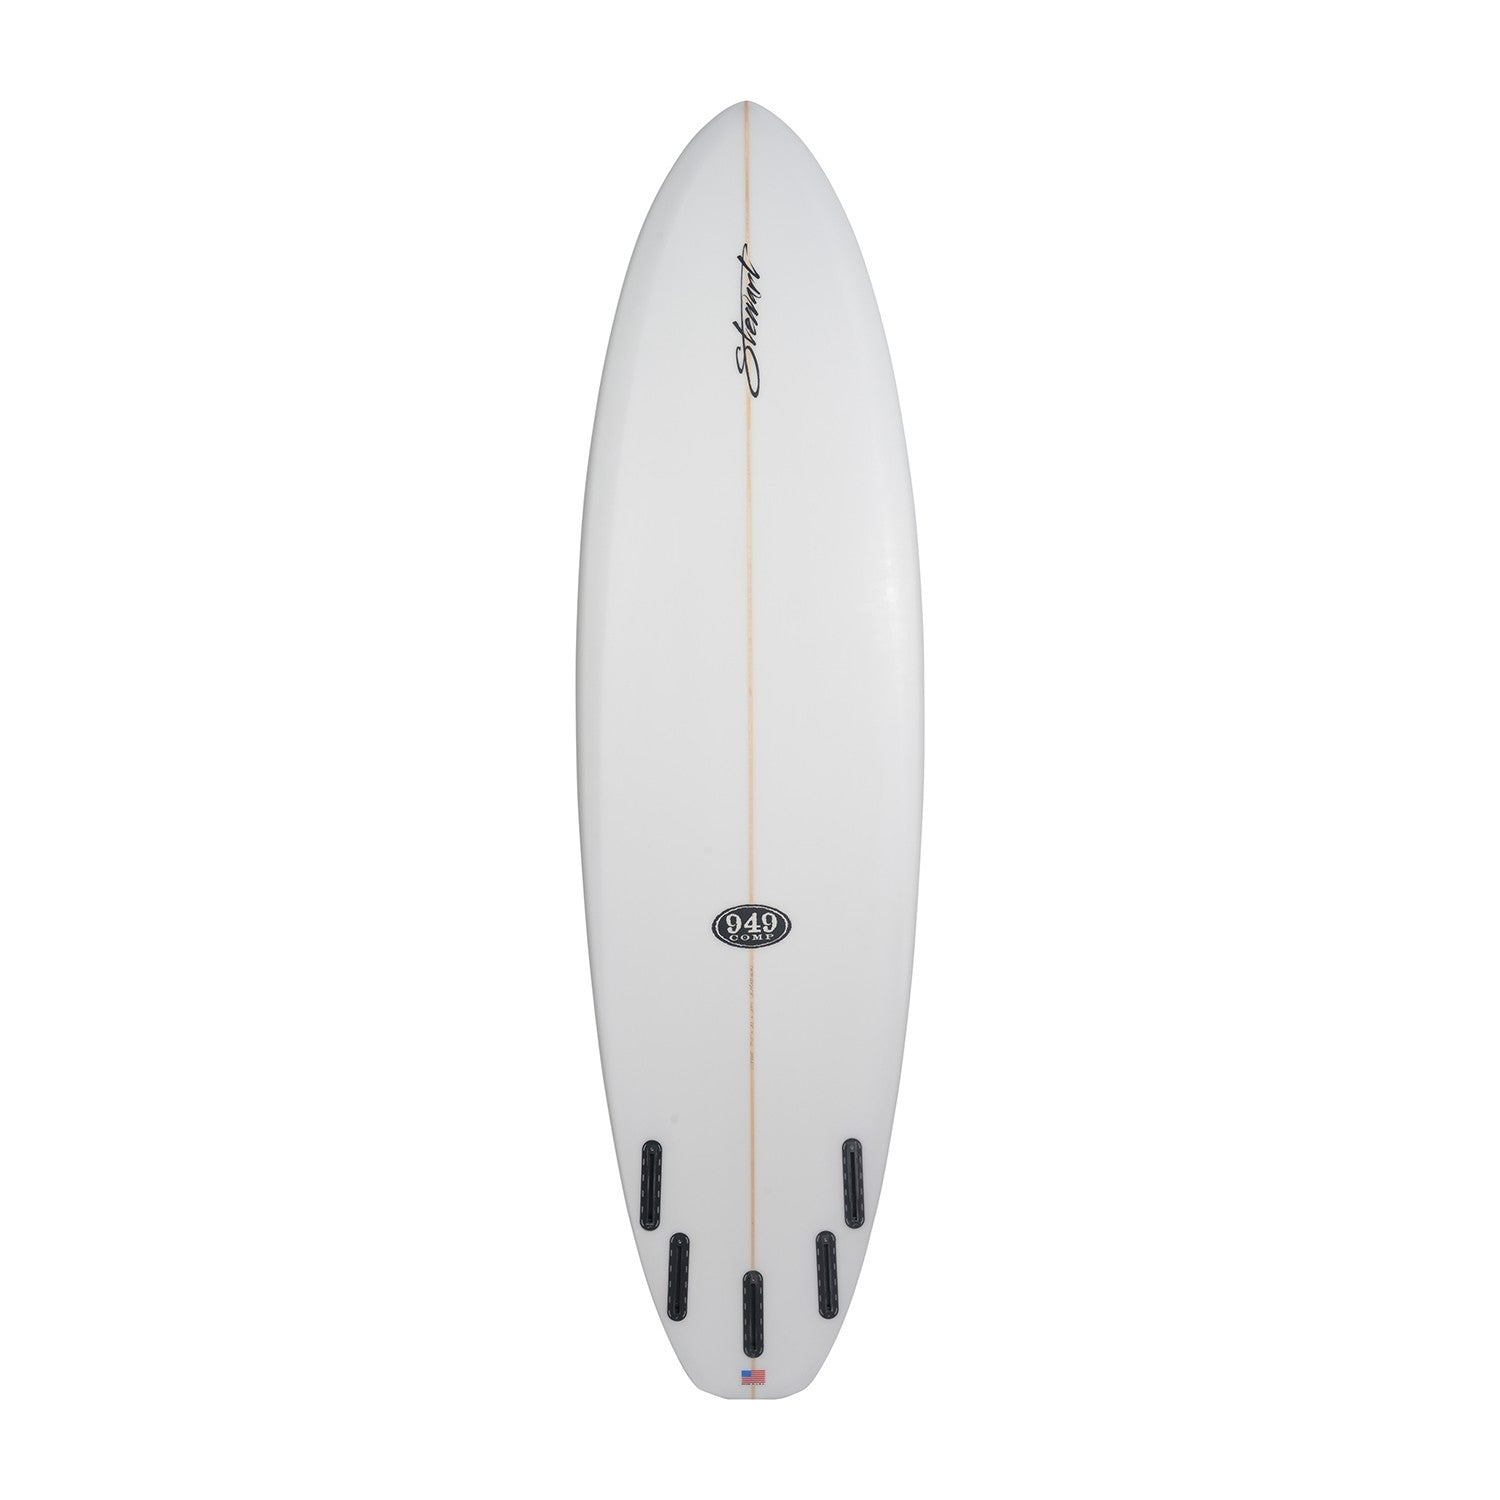 Tablas de surf STEWART - 949 Comp 7'0 (PU) - Transparente